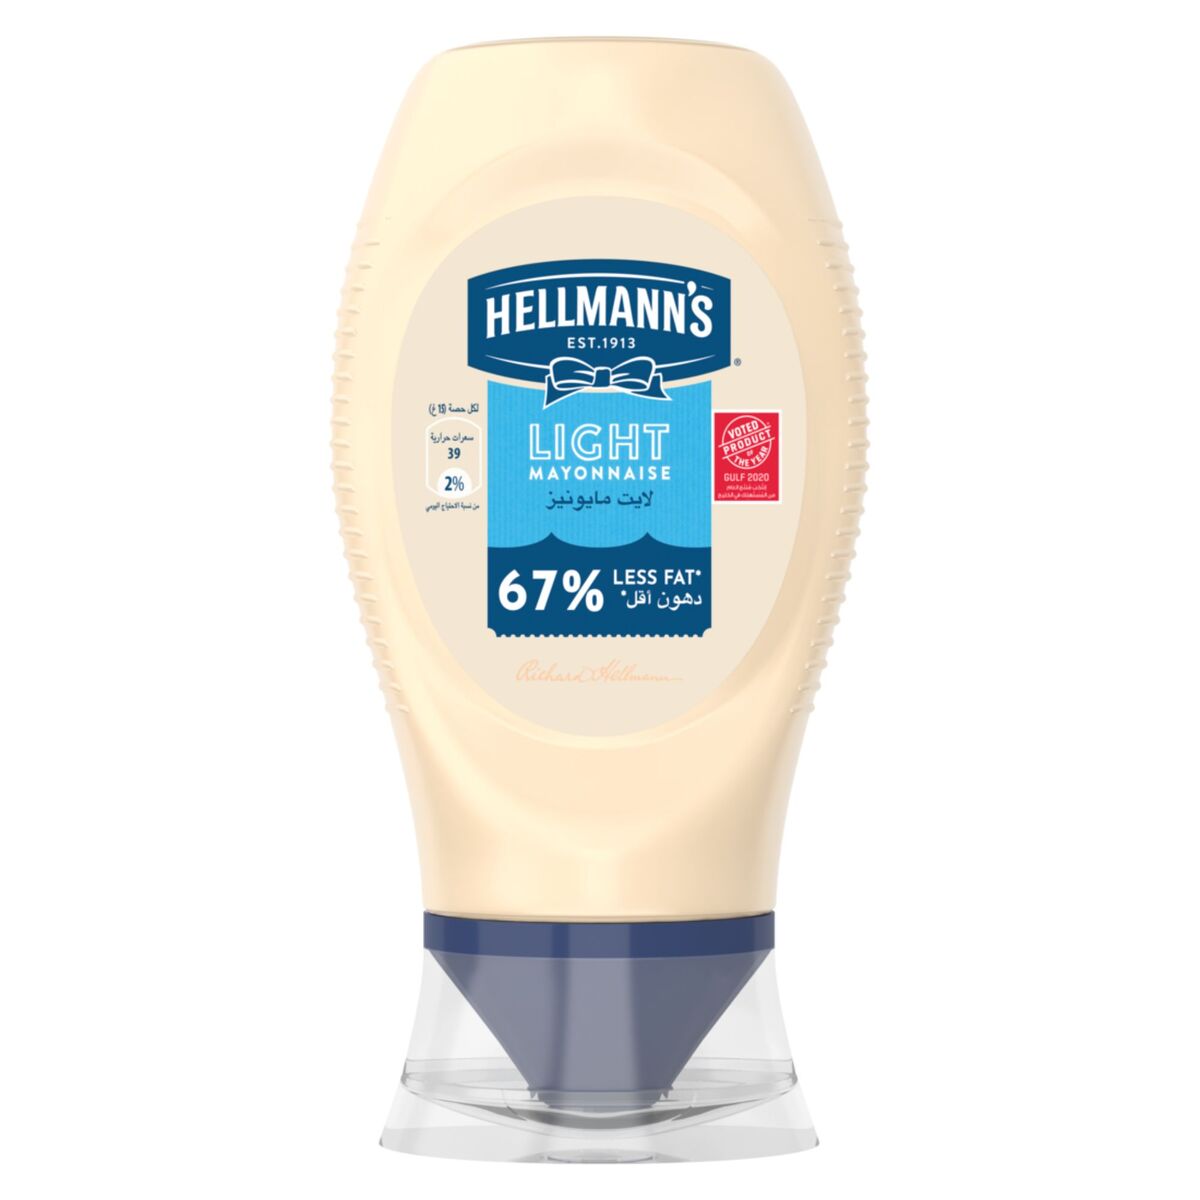 Hellmann's Light Mayonnaise, 240 g